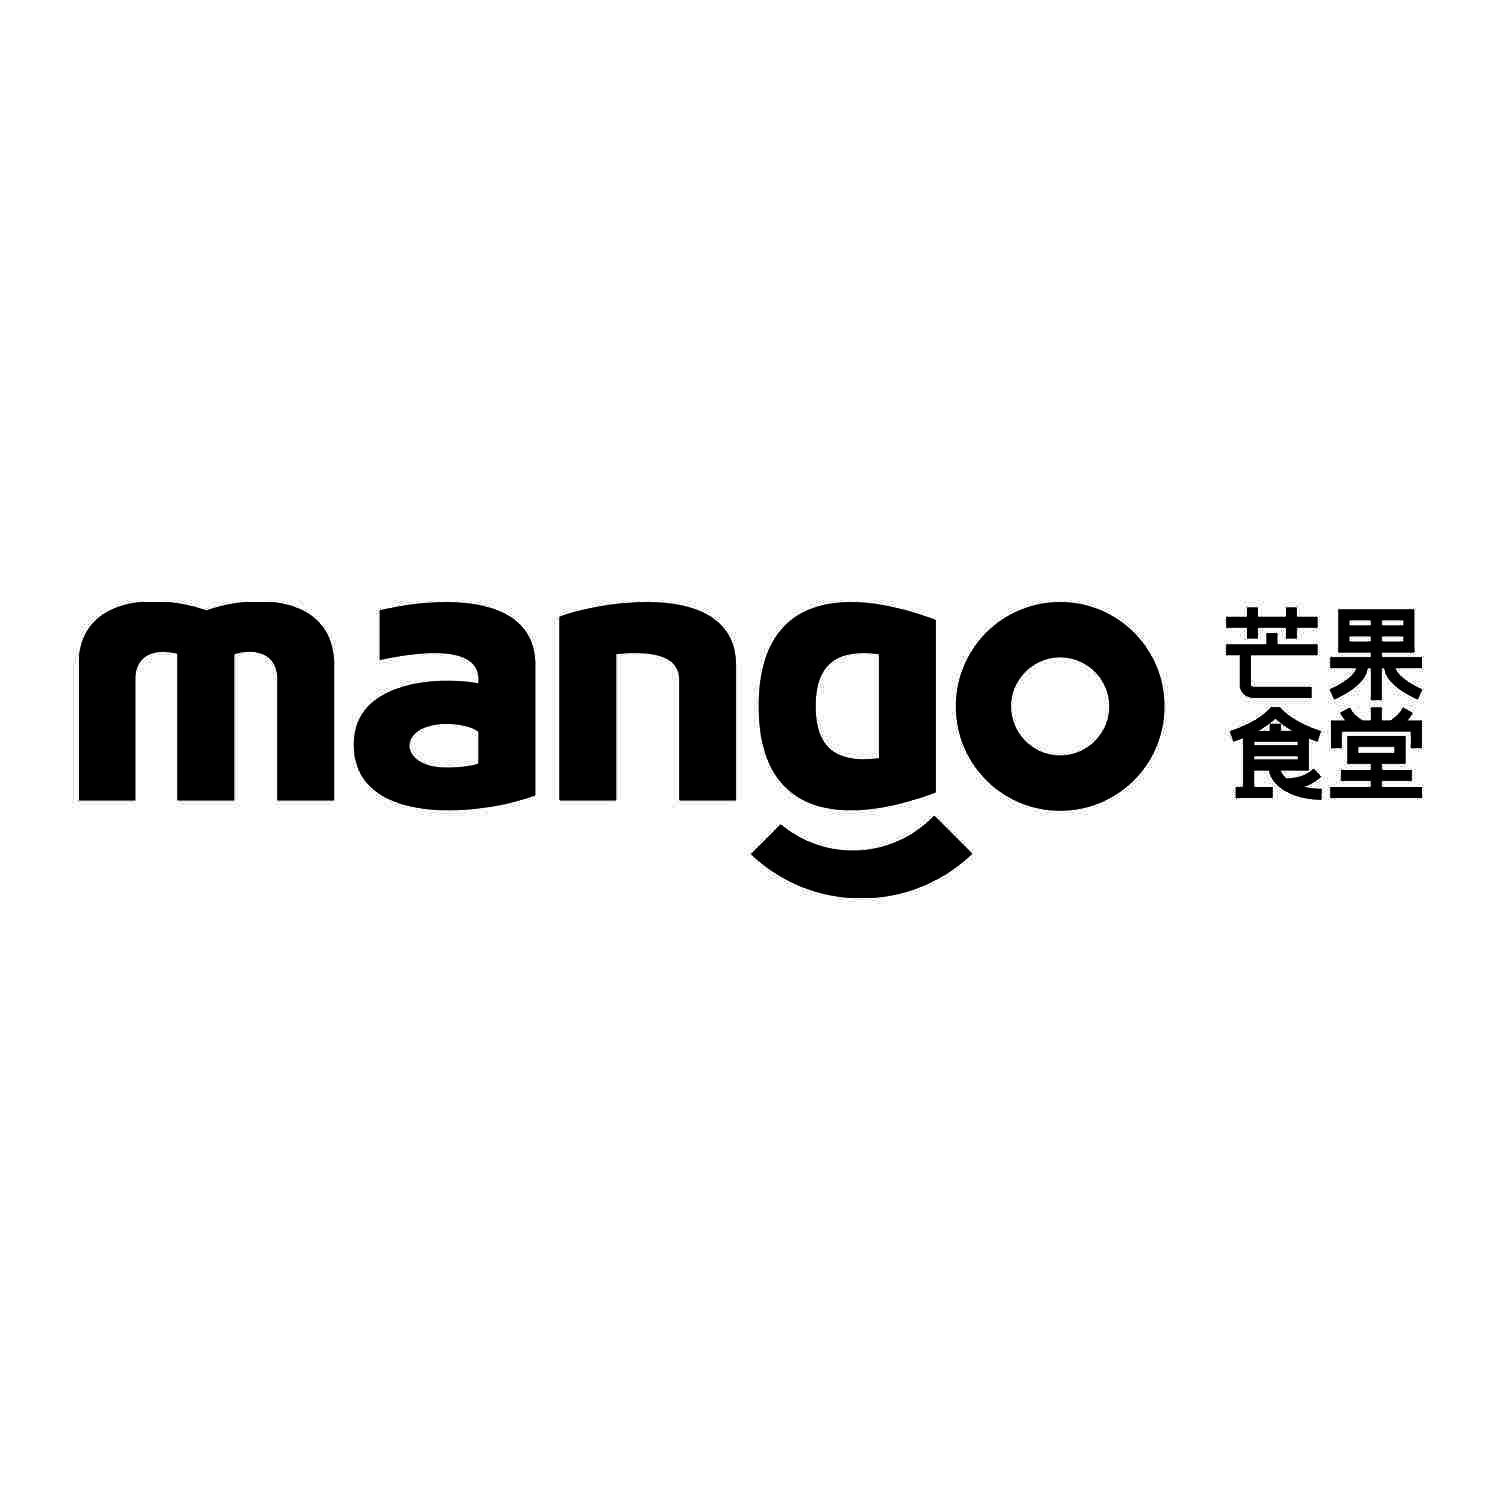 商标文字芒果食堂 mango商标注册号 46442669,商标申请人江西芒果青年